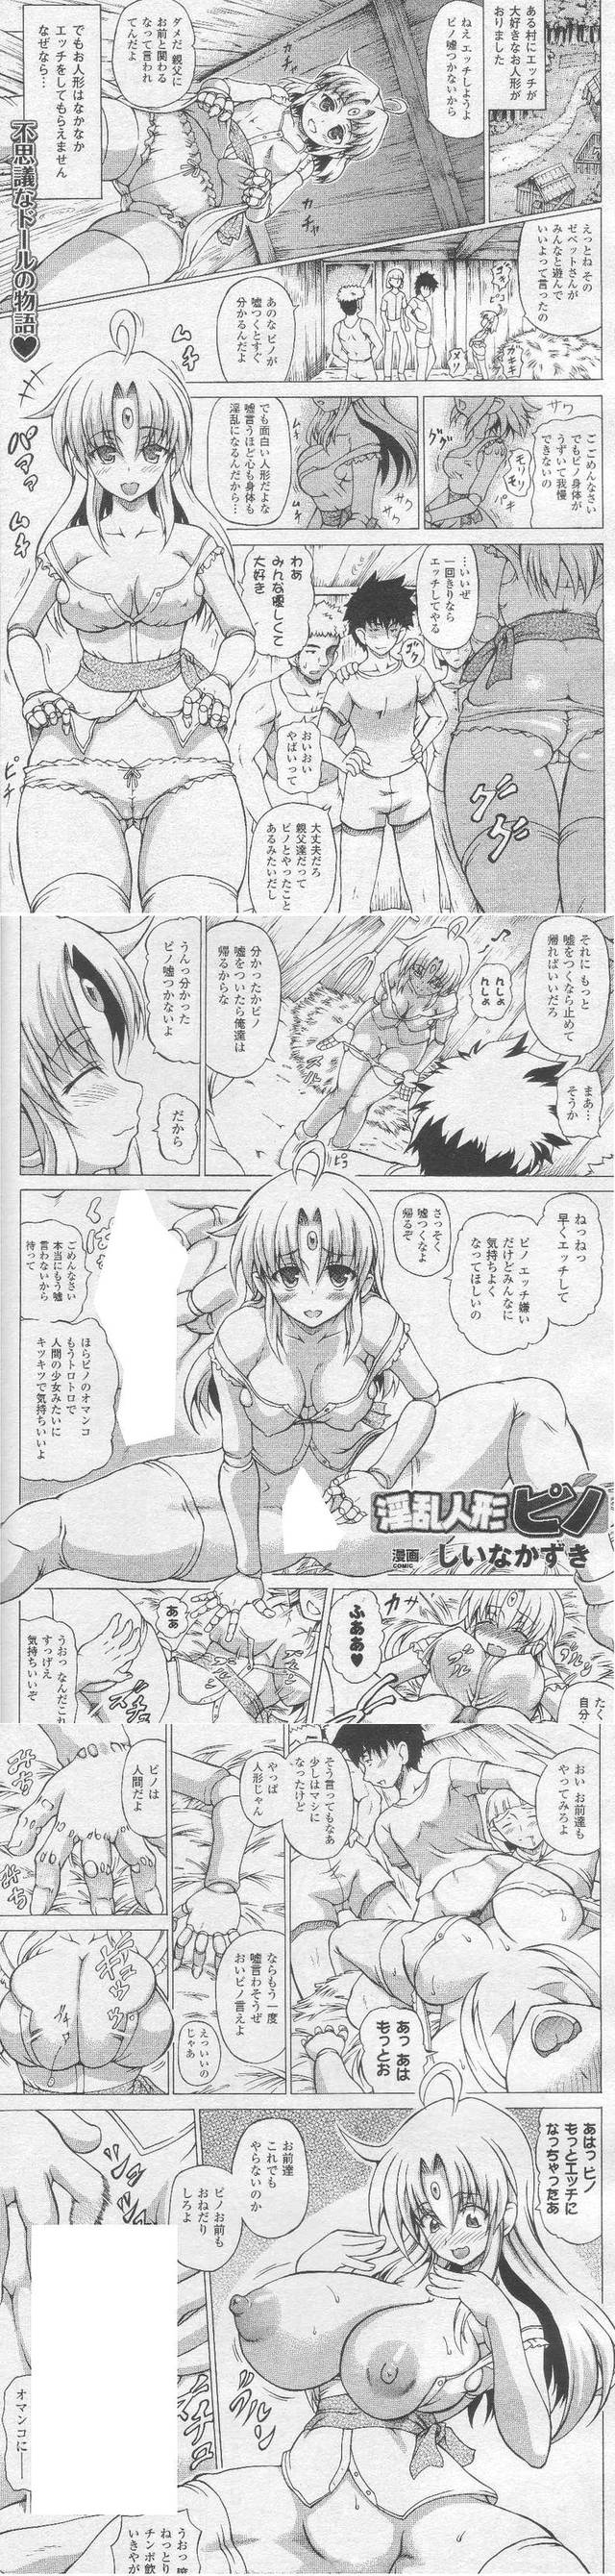 harumi's bad play hentai manga anim inranningyo pino